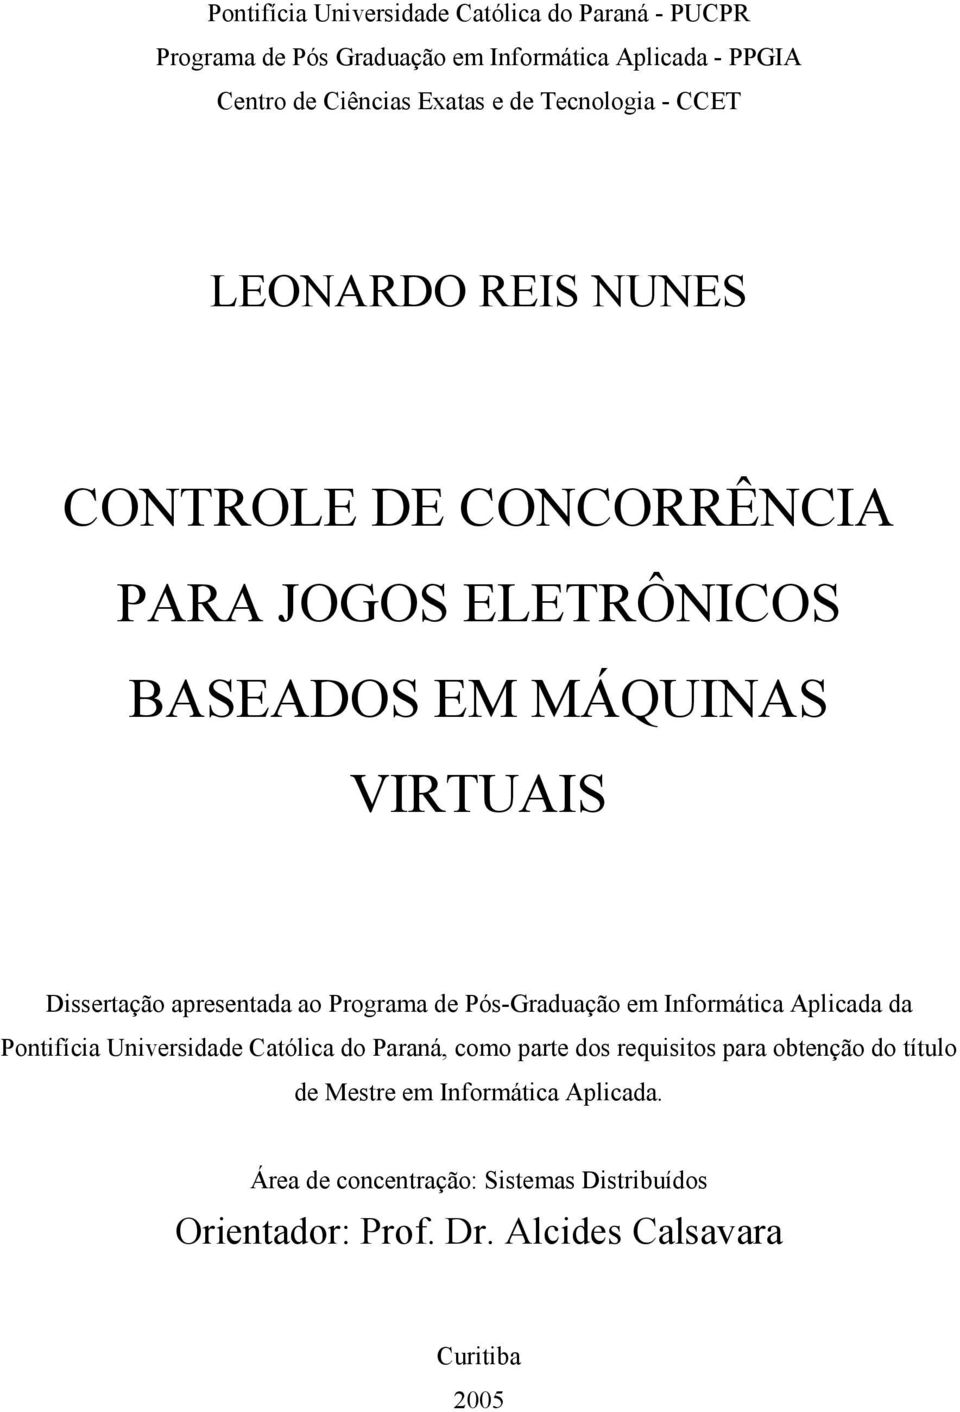 ao Programa de Pós-Graduação em Informática Aplicada da Pontifícia Universidade Católica do Paraná, como parte dos requisitos para obtenção